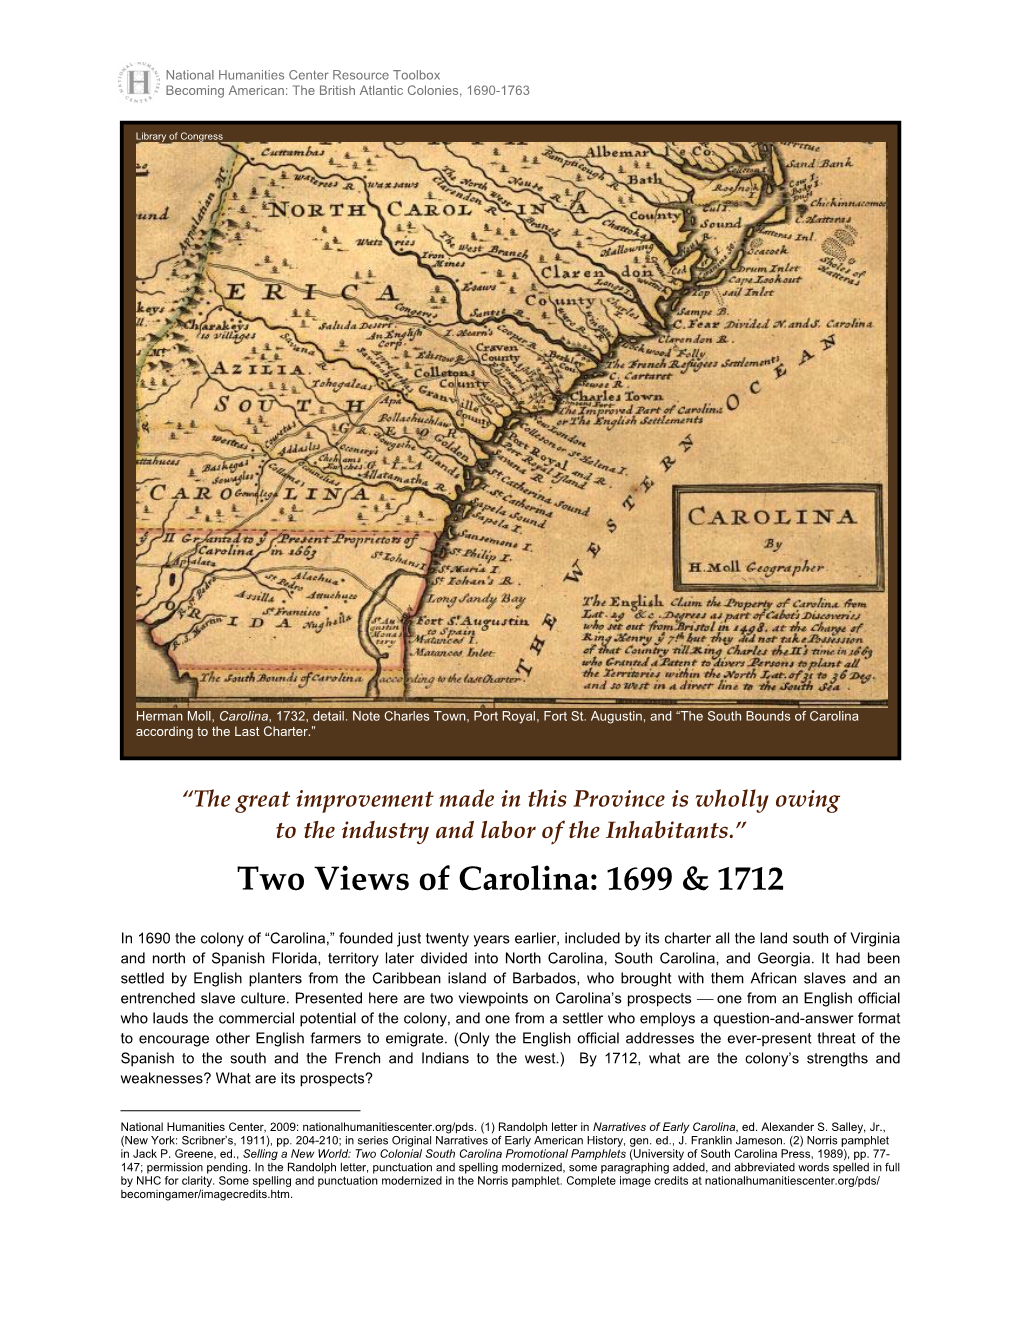 Two Views of Carolina: 1699 & 1712, Edward Randolph and John Norris